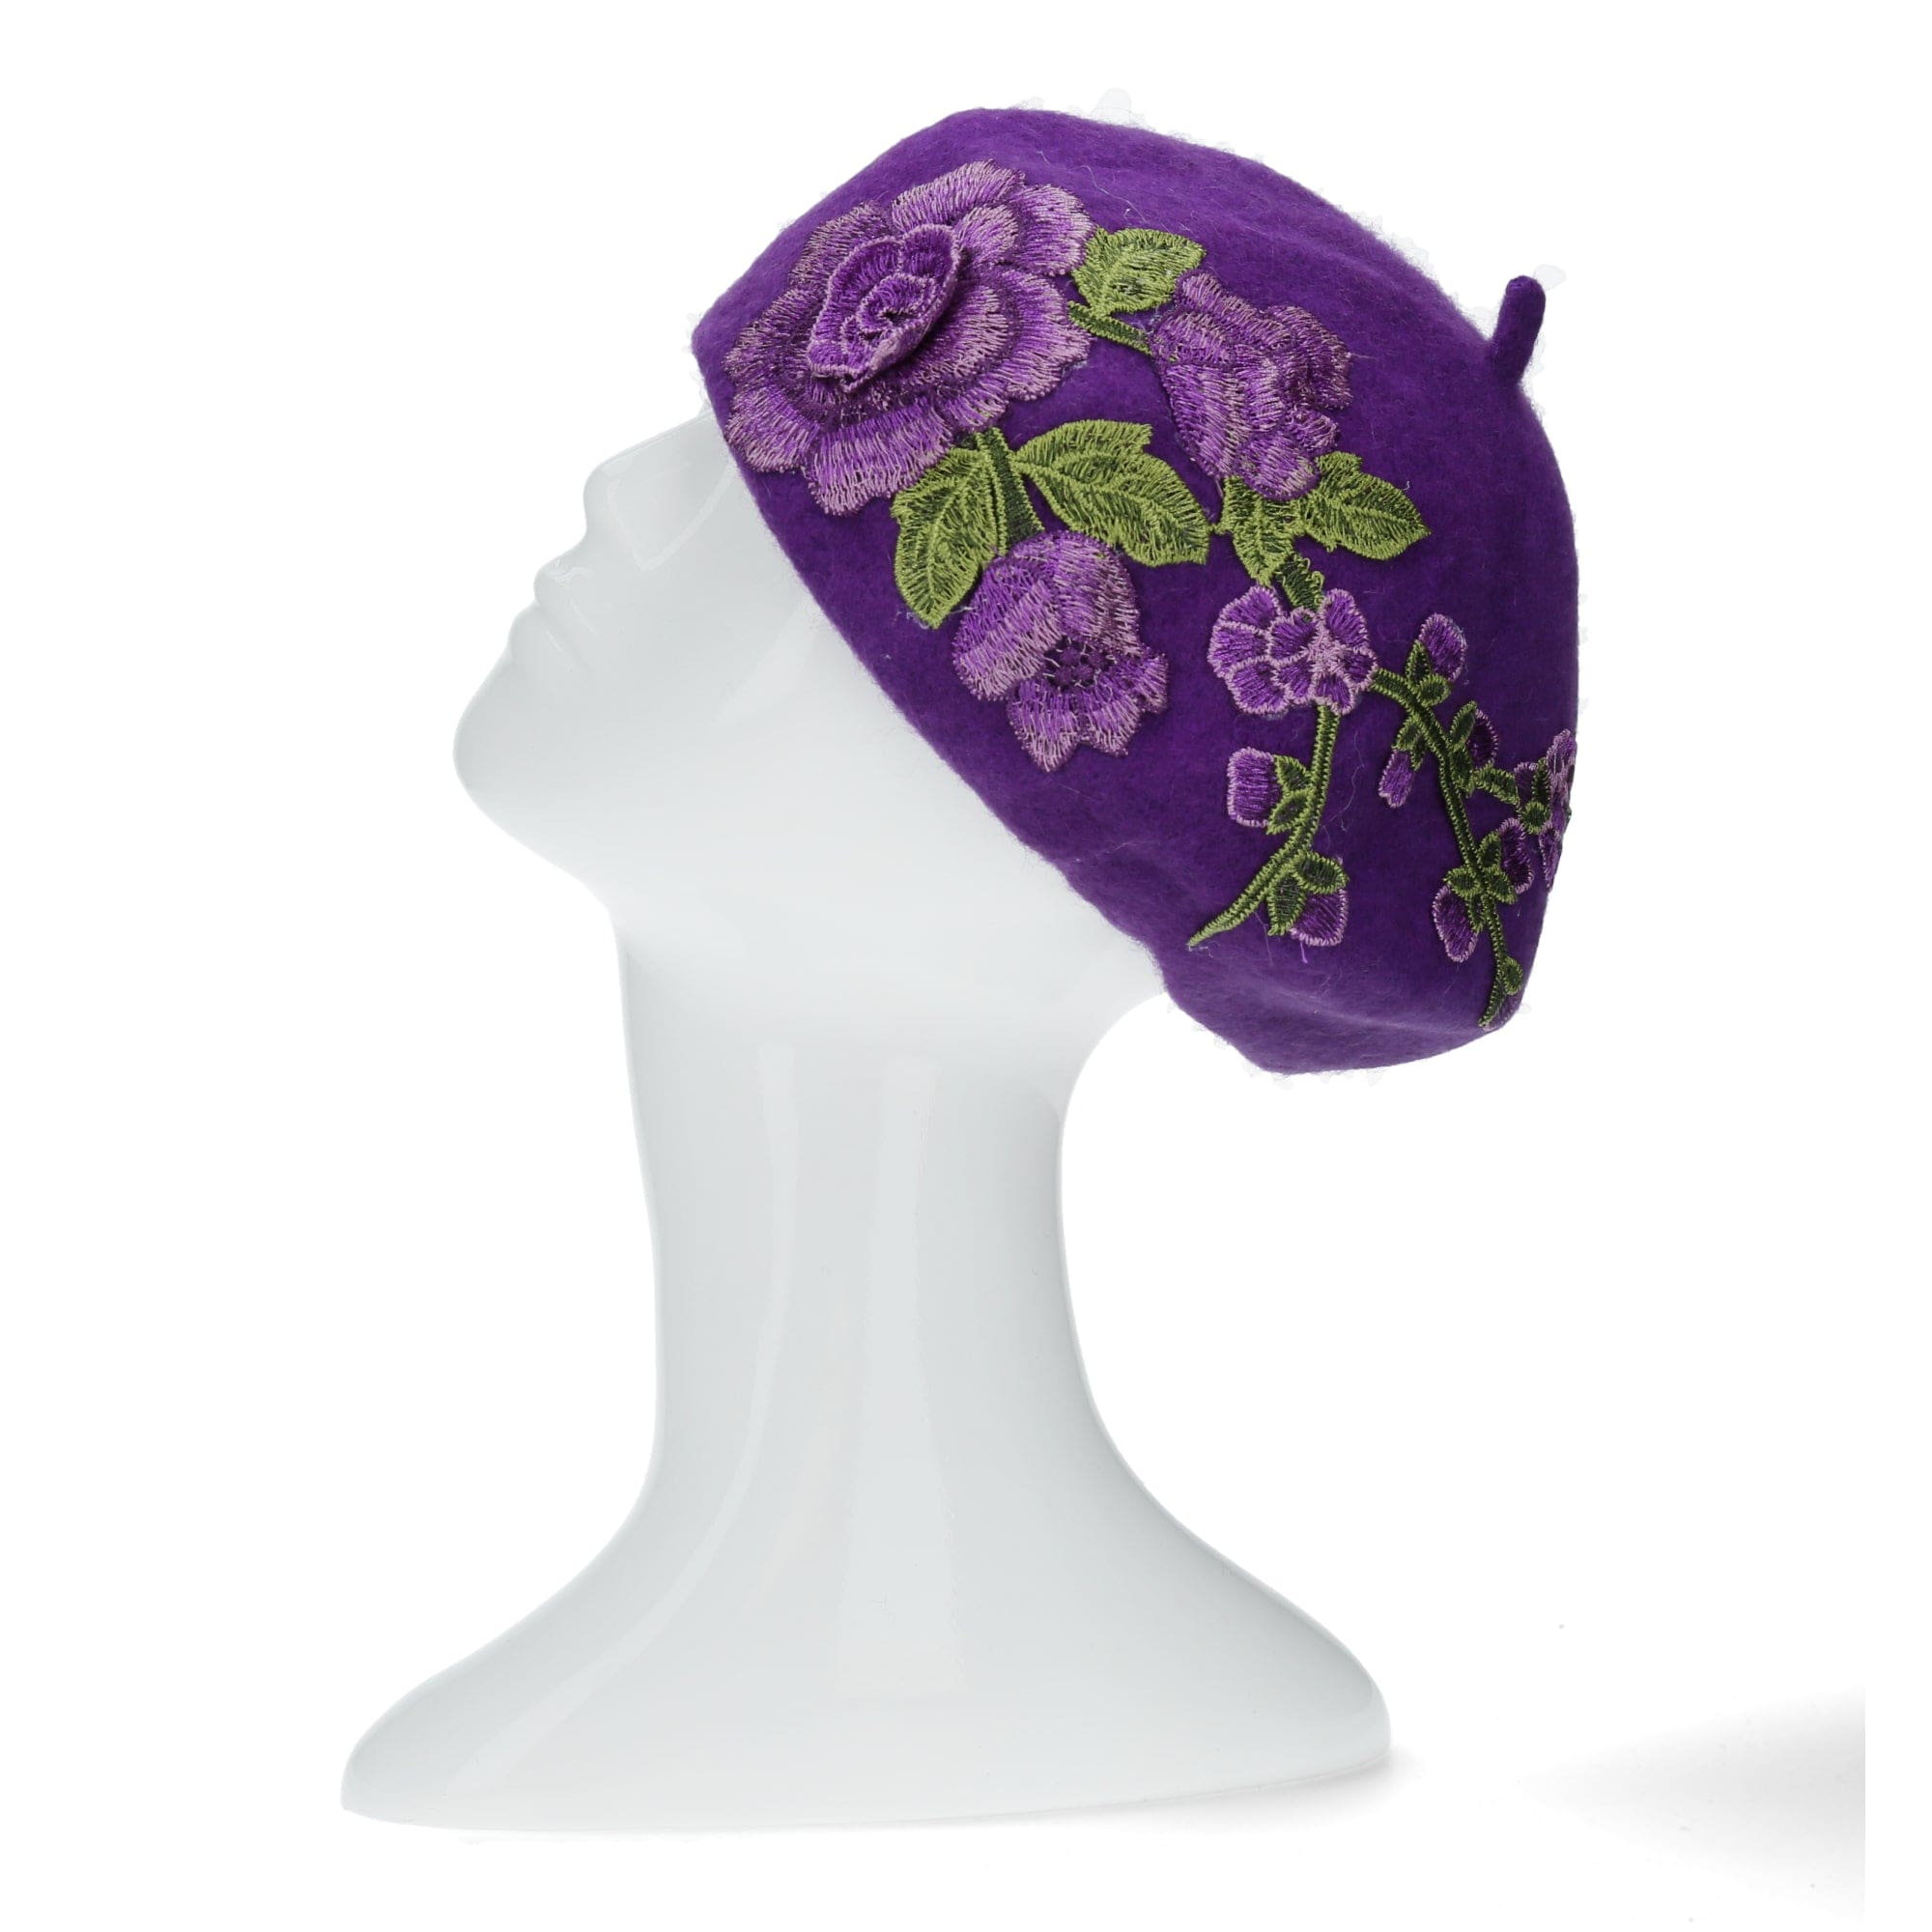 Emylle blomsterbaret - Violet Hats